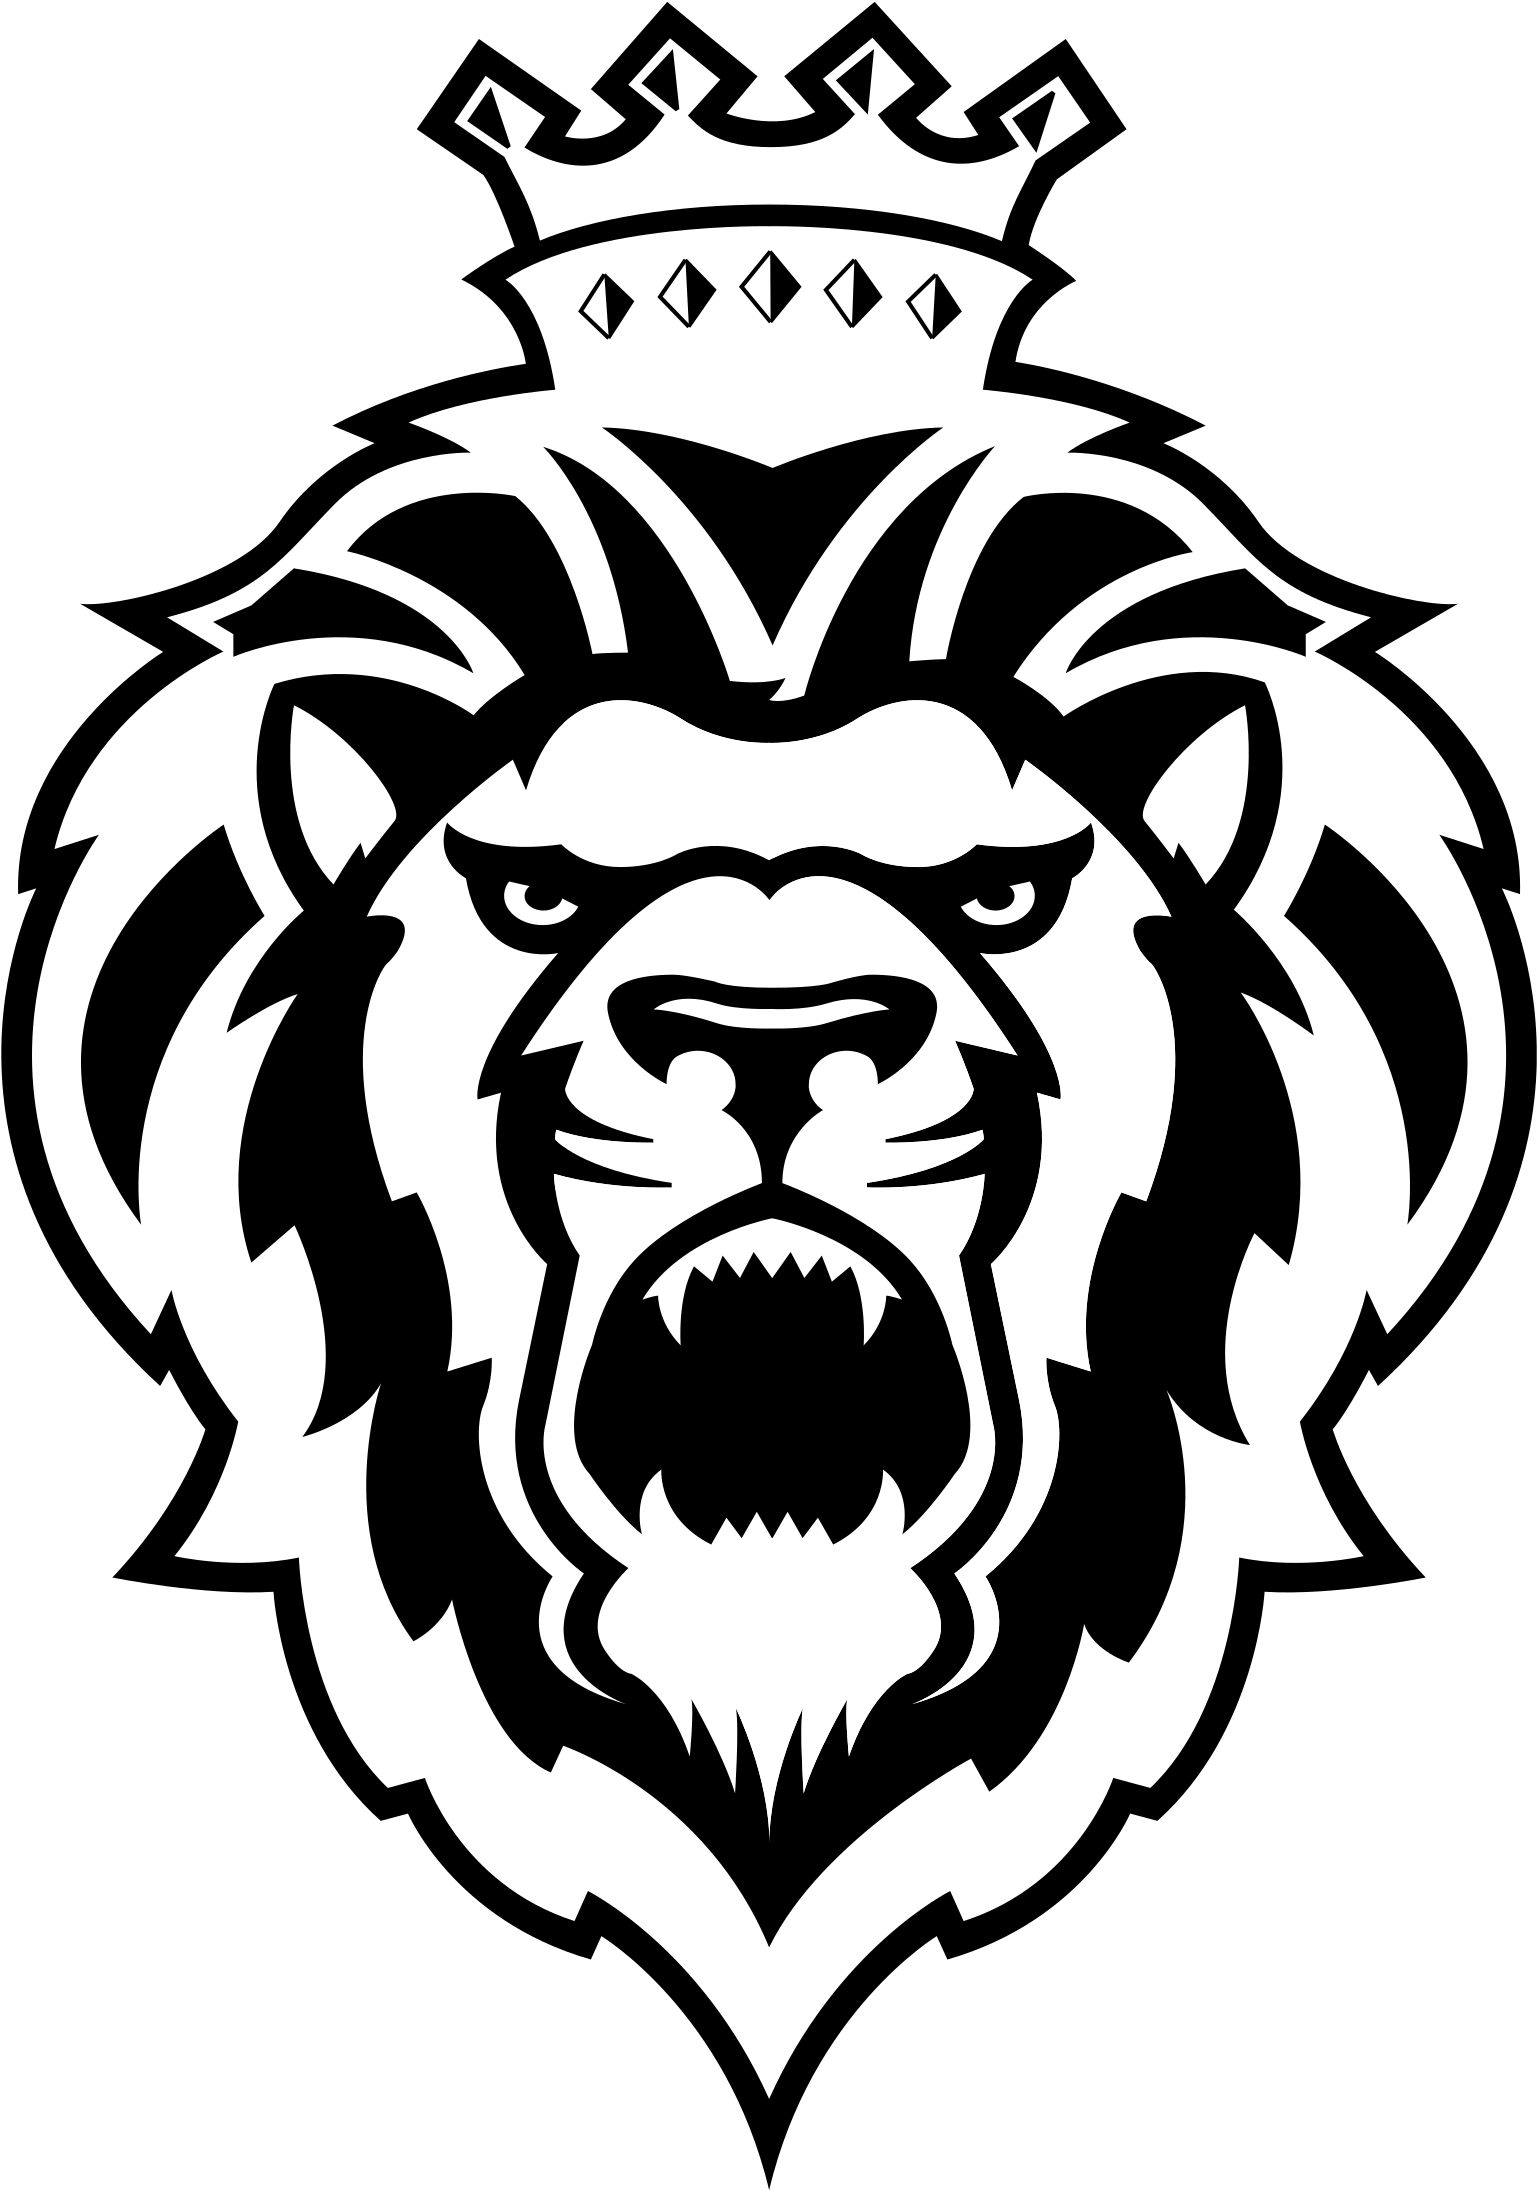 Crown Royal Logo Png 1537 X 2191